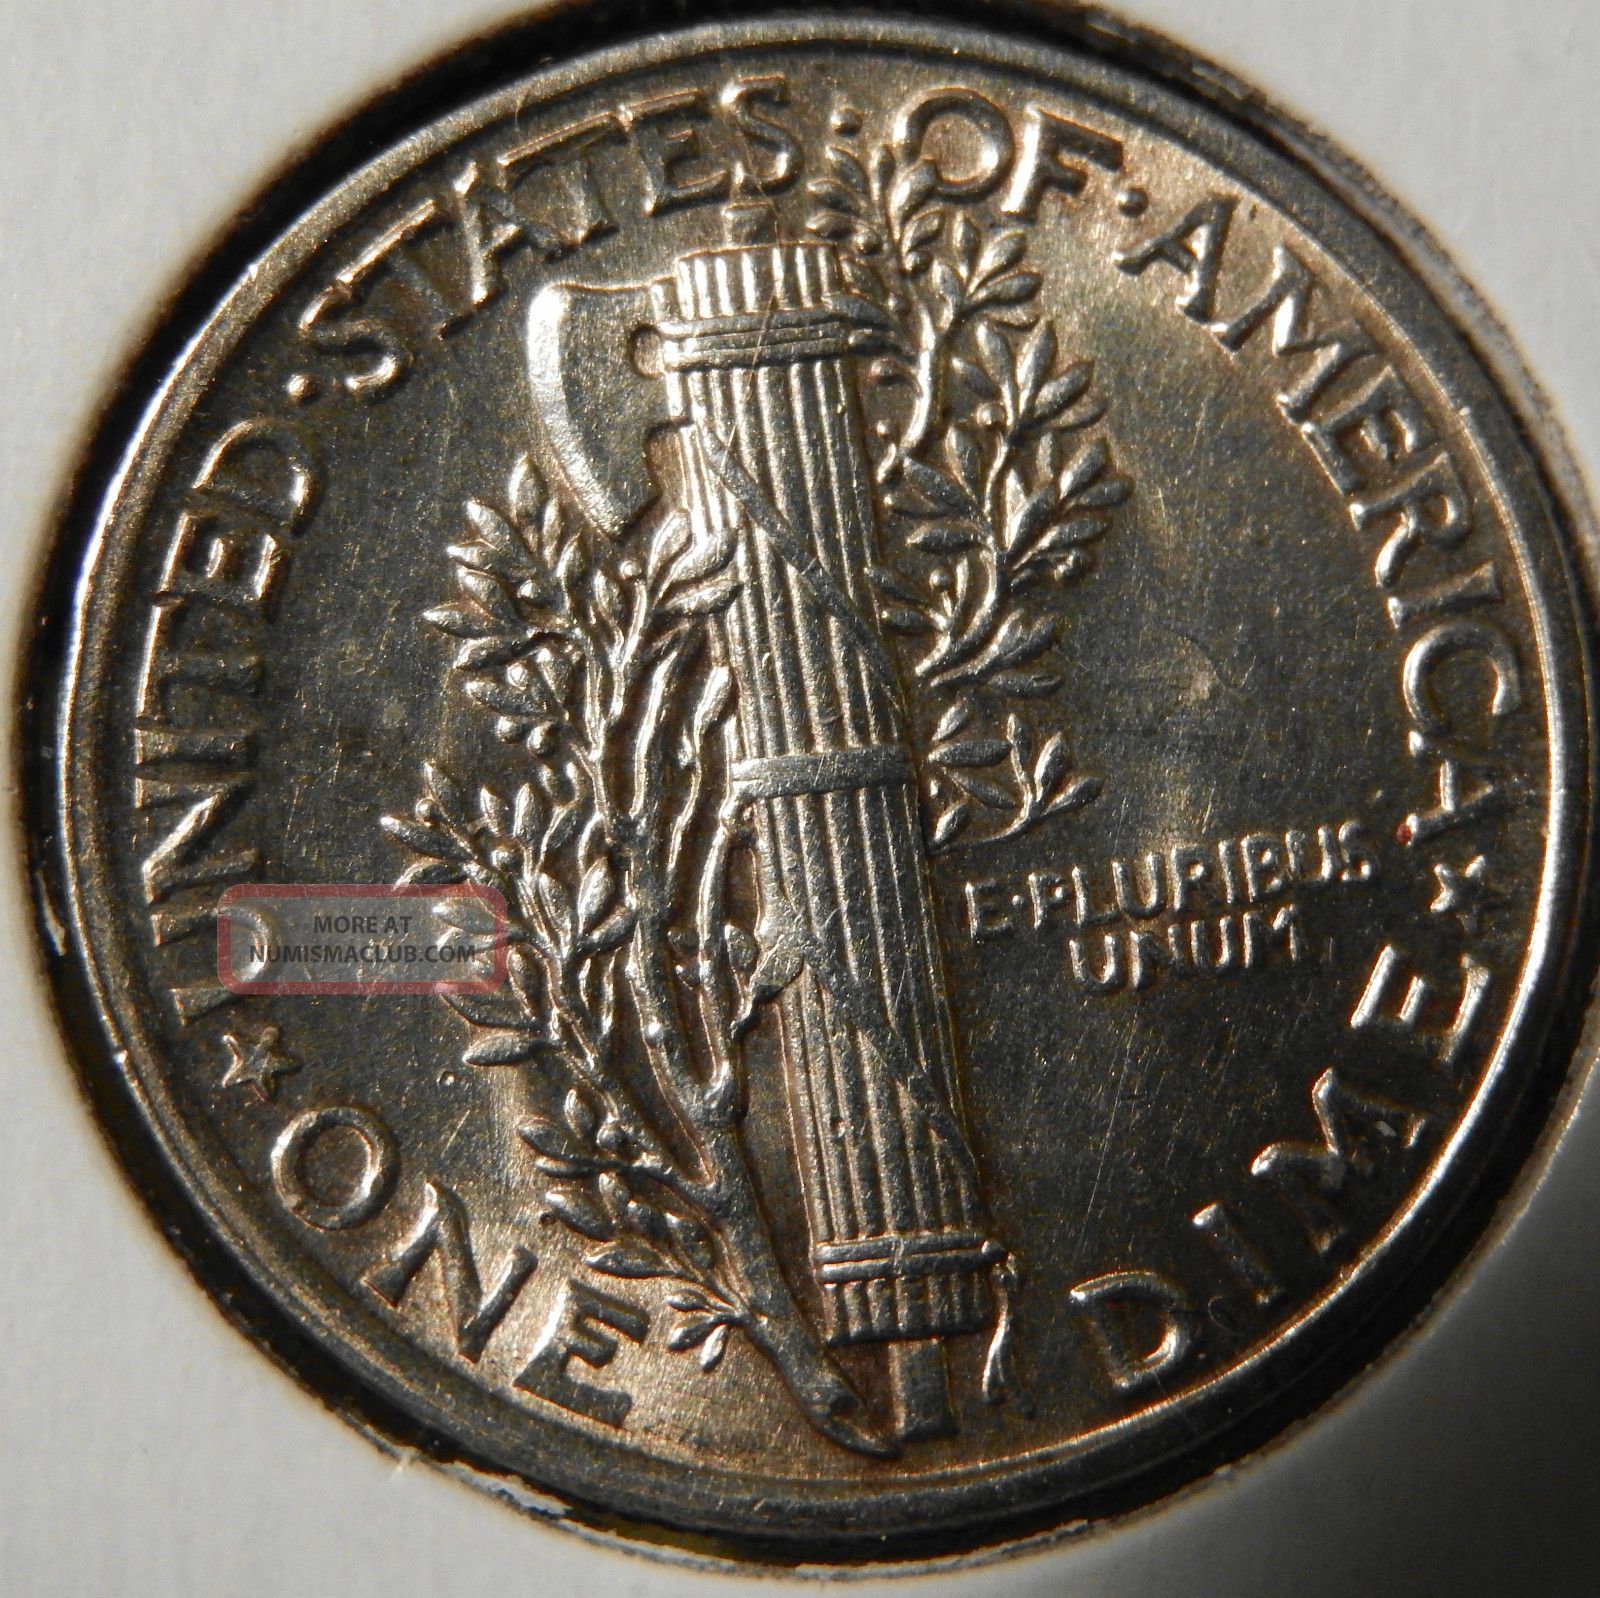 1942 mercury dime price